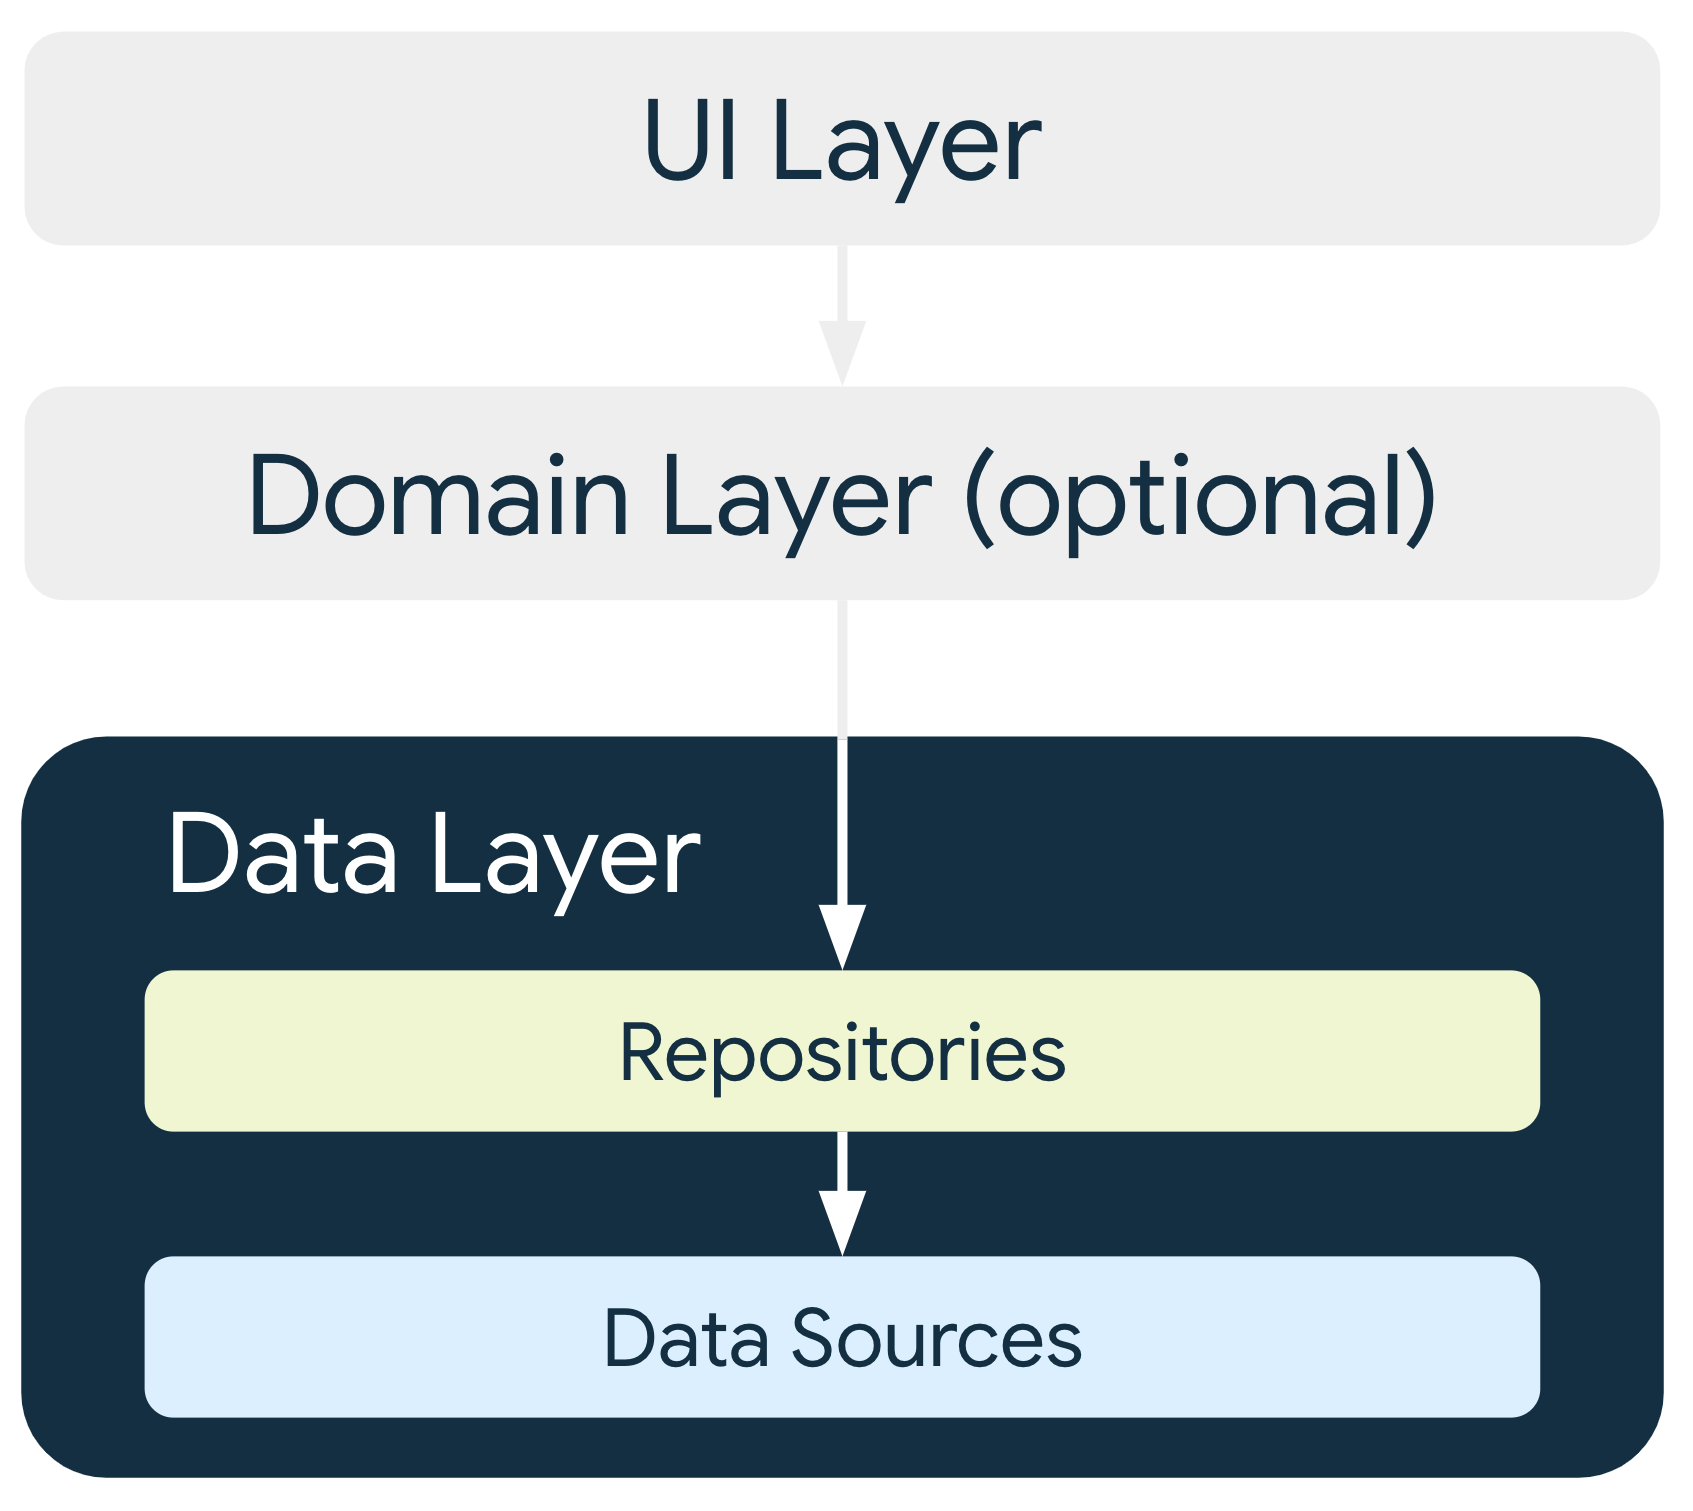 tầng dữ liệu (data layer) chứa kho lưu trữ (repository) và nguồn dữ liệu